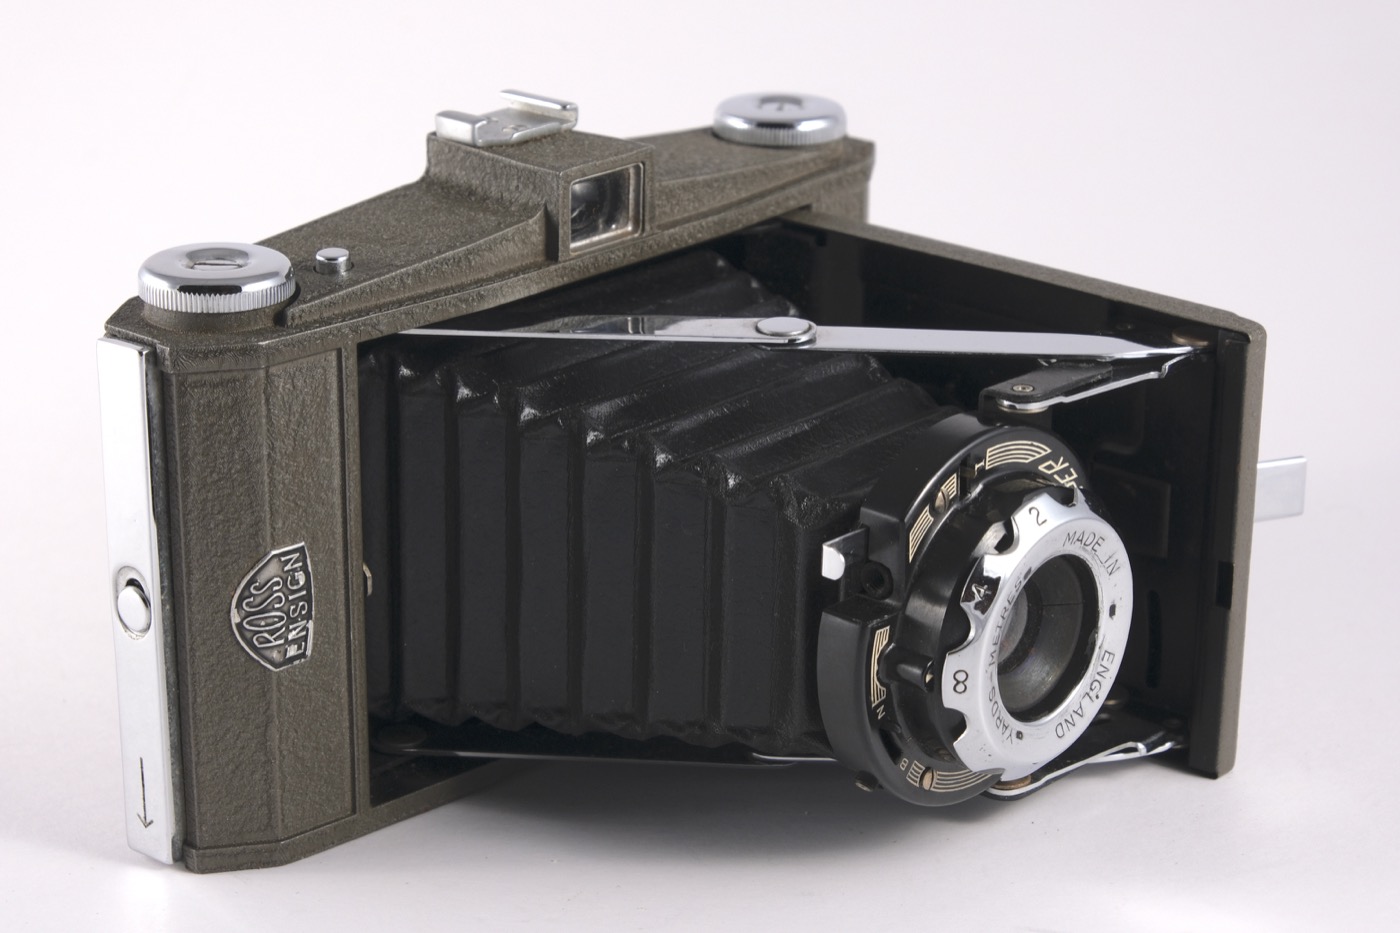 Ross-Ensign Selfix Snapper camera